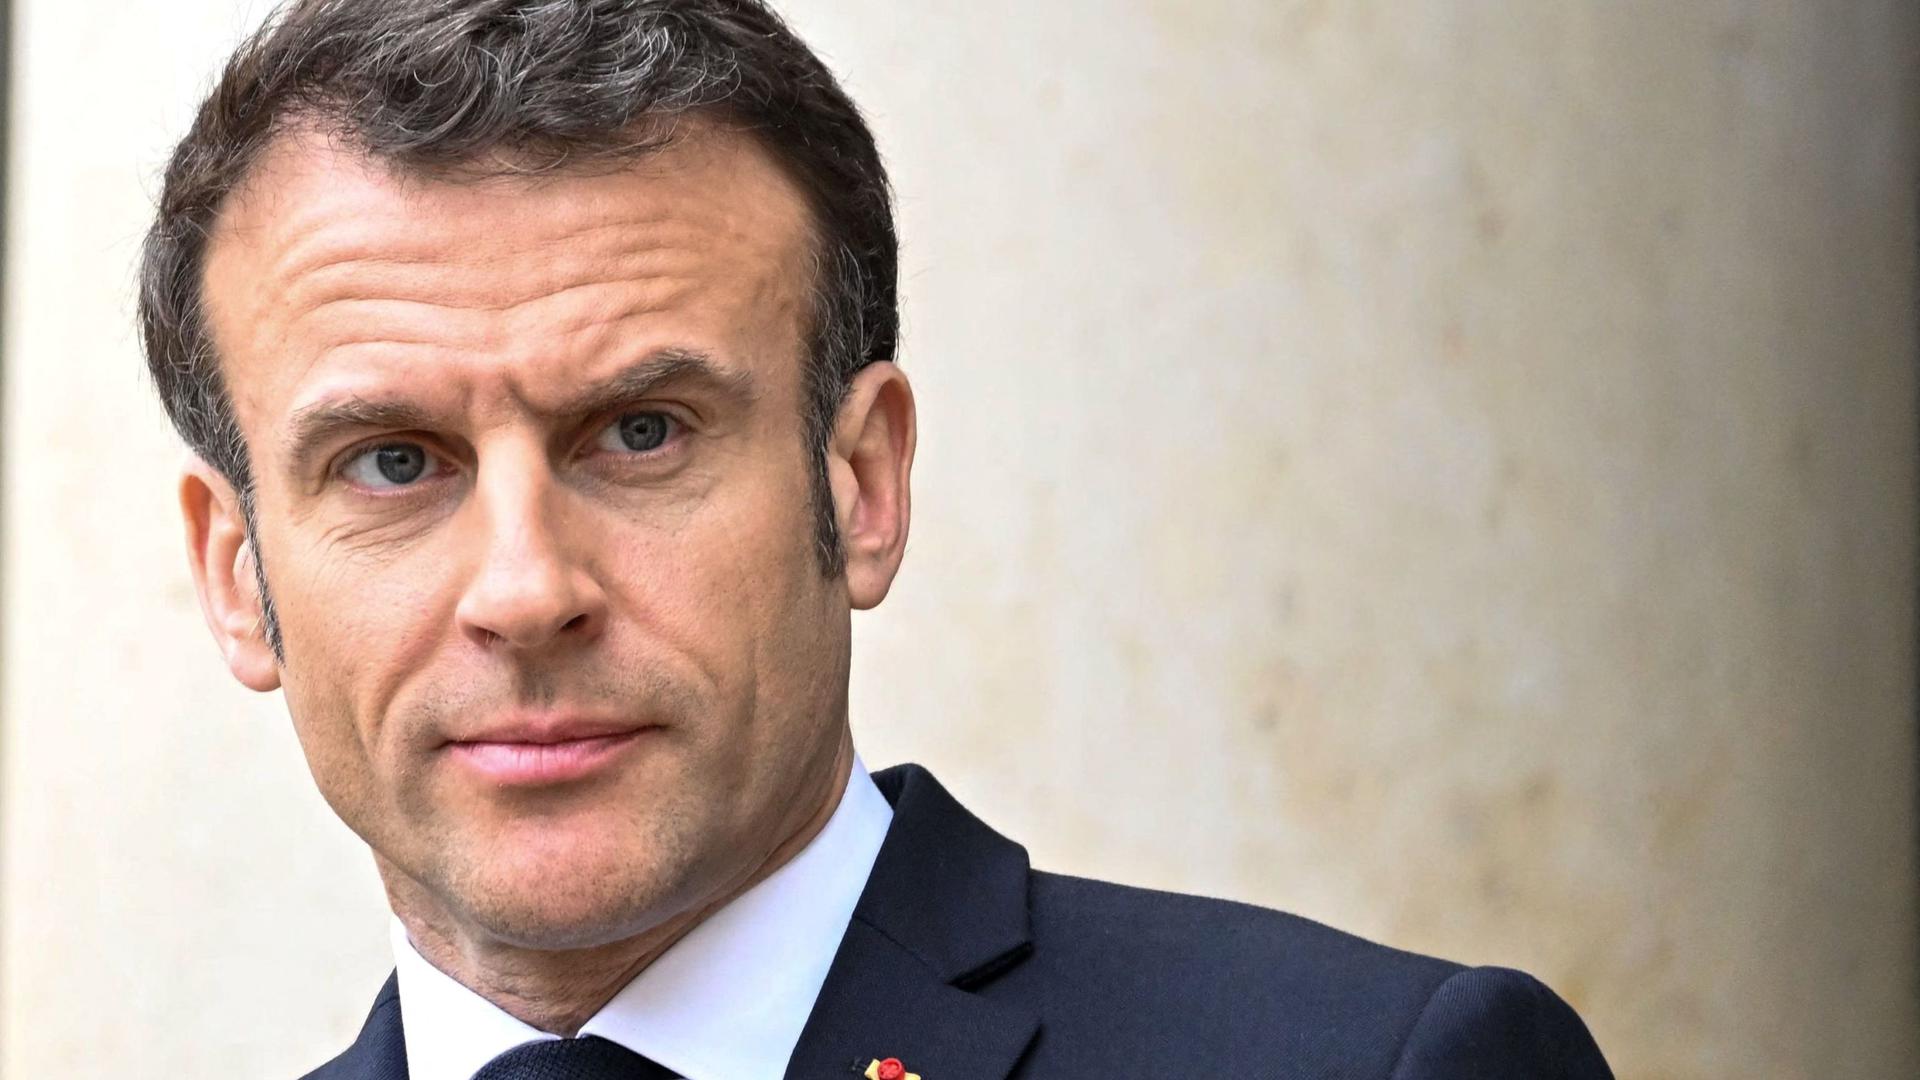 Le président de la République Emmanuel Macron s'est exprimé lundi soir sur TF1.